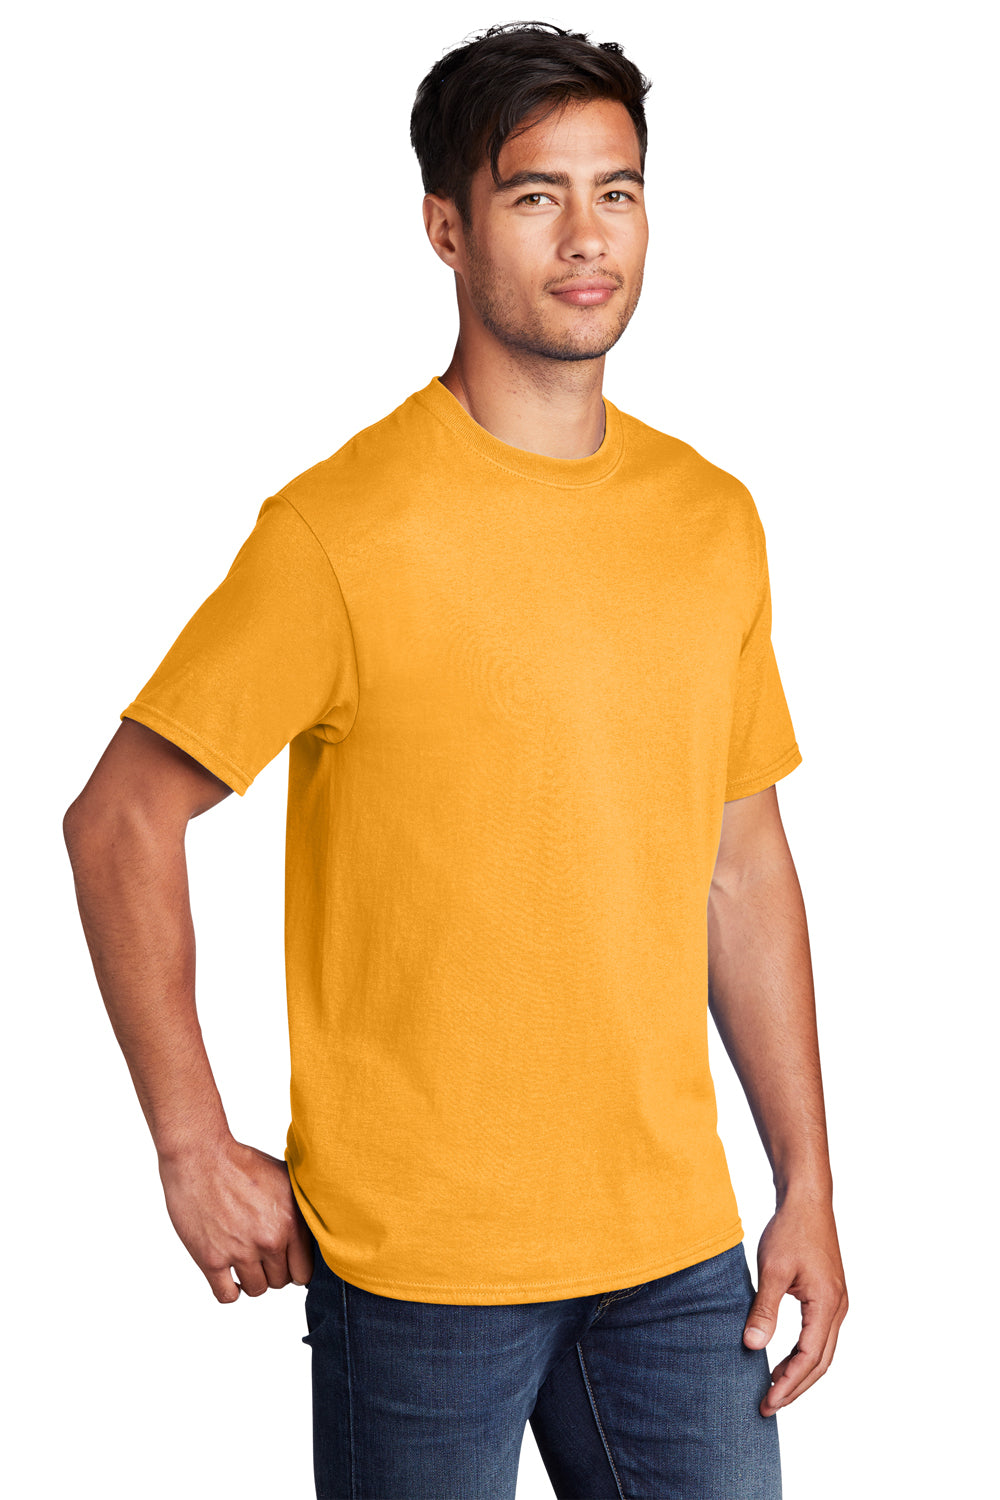 Port & Company PC54DTG Core Cotton DTG Short Sleeve Crewneck T-Shirt Gold 3Q